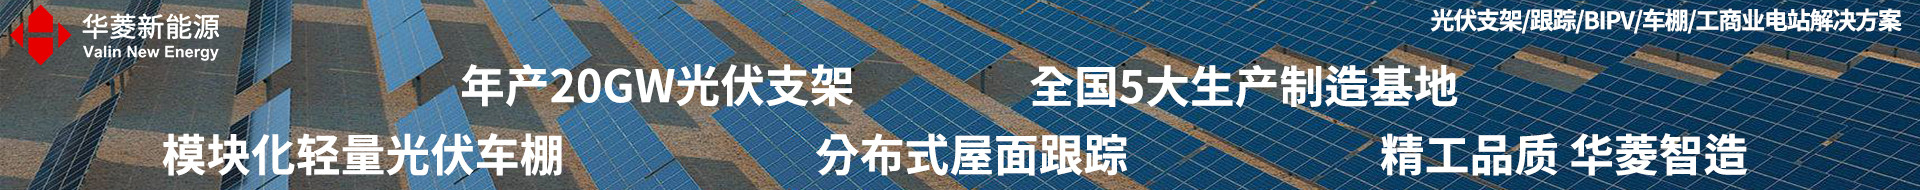 华菱新能源太阳能光伏支架